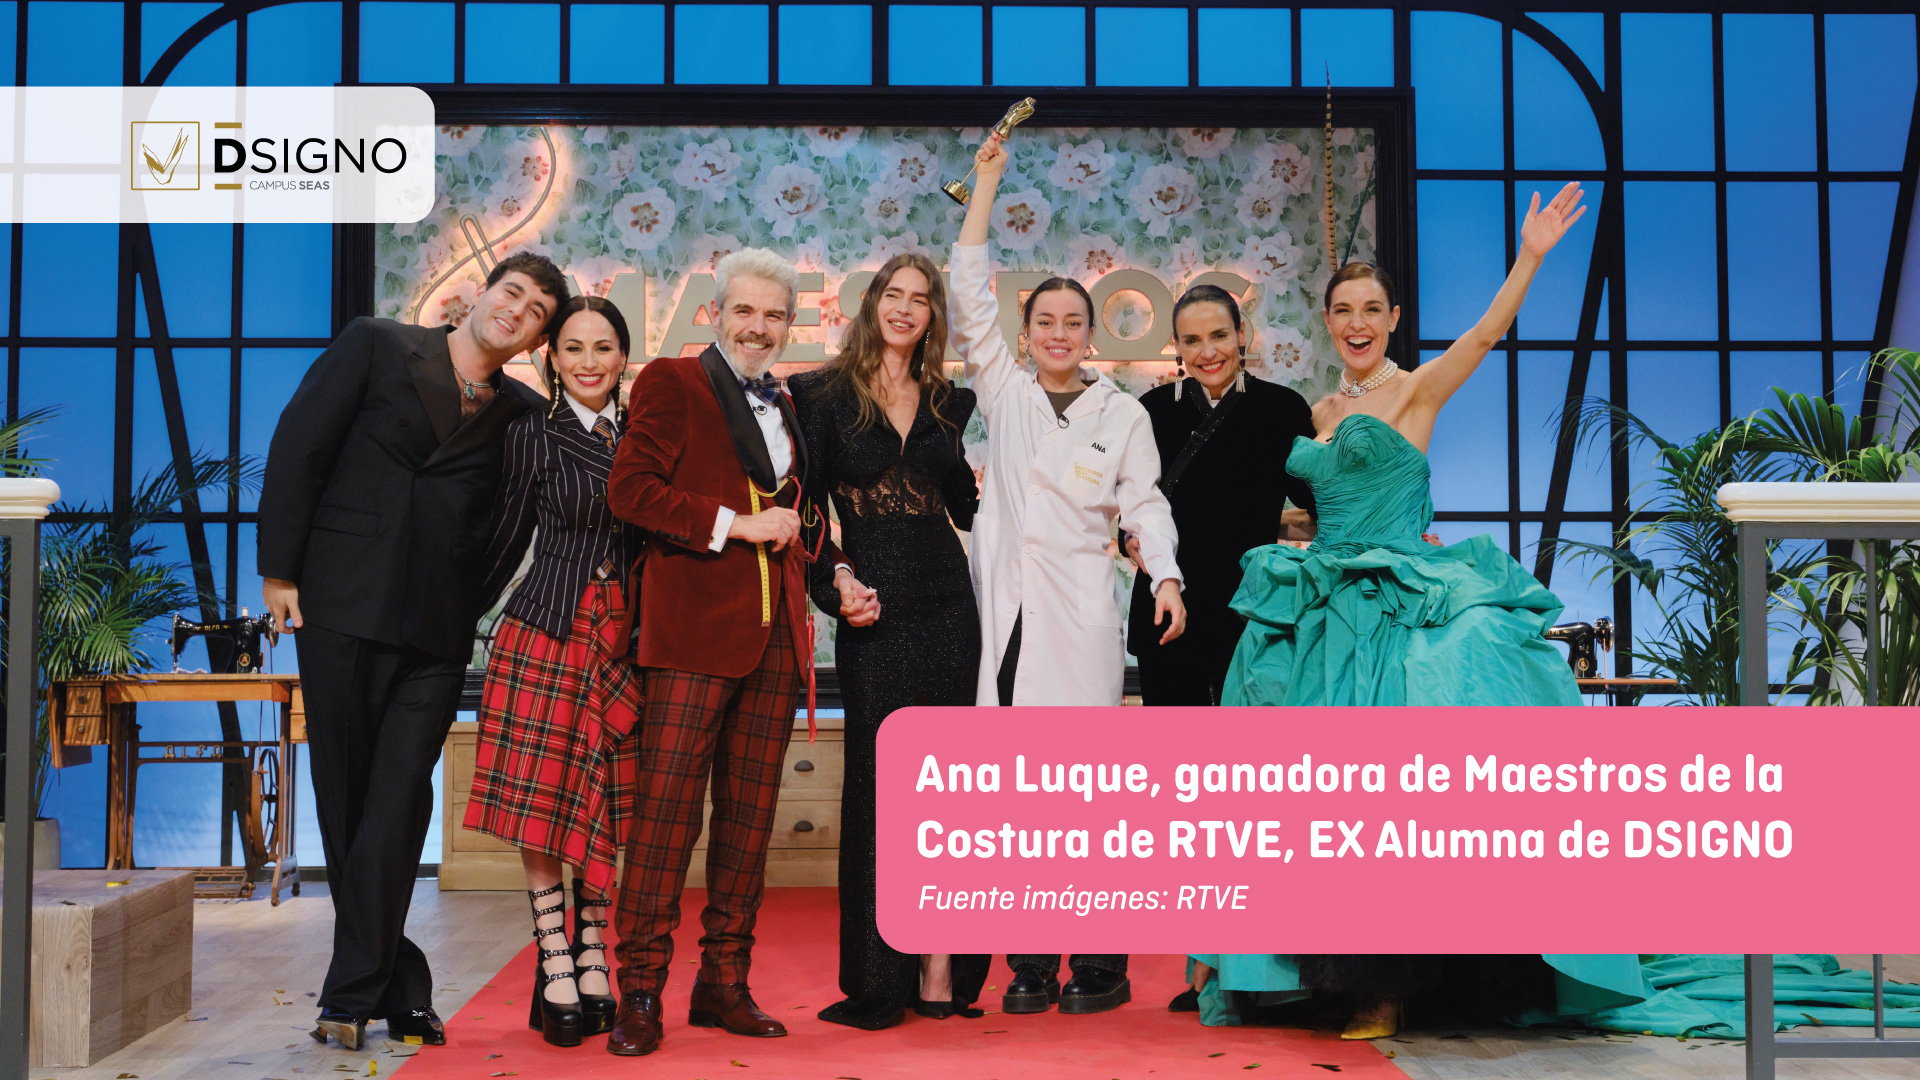 Ana Luque, ganadora de Maestros de la Costura, EX Alumna de DSIGNO